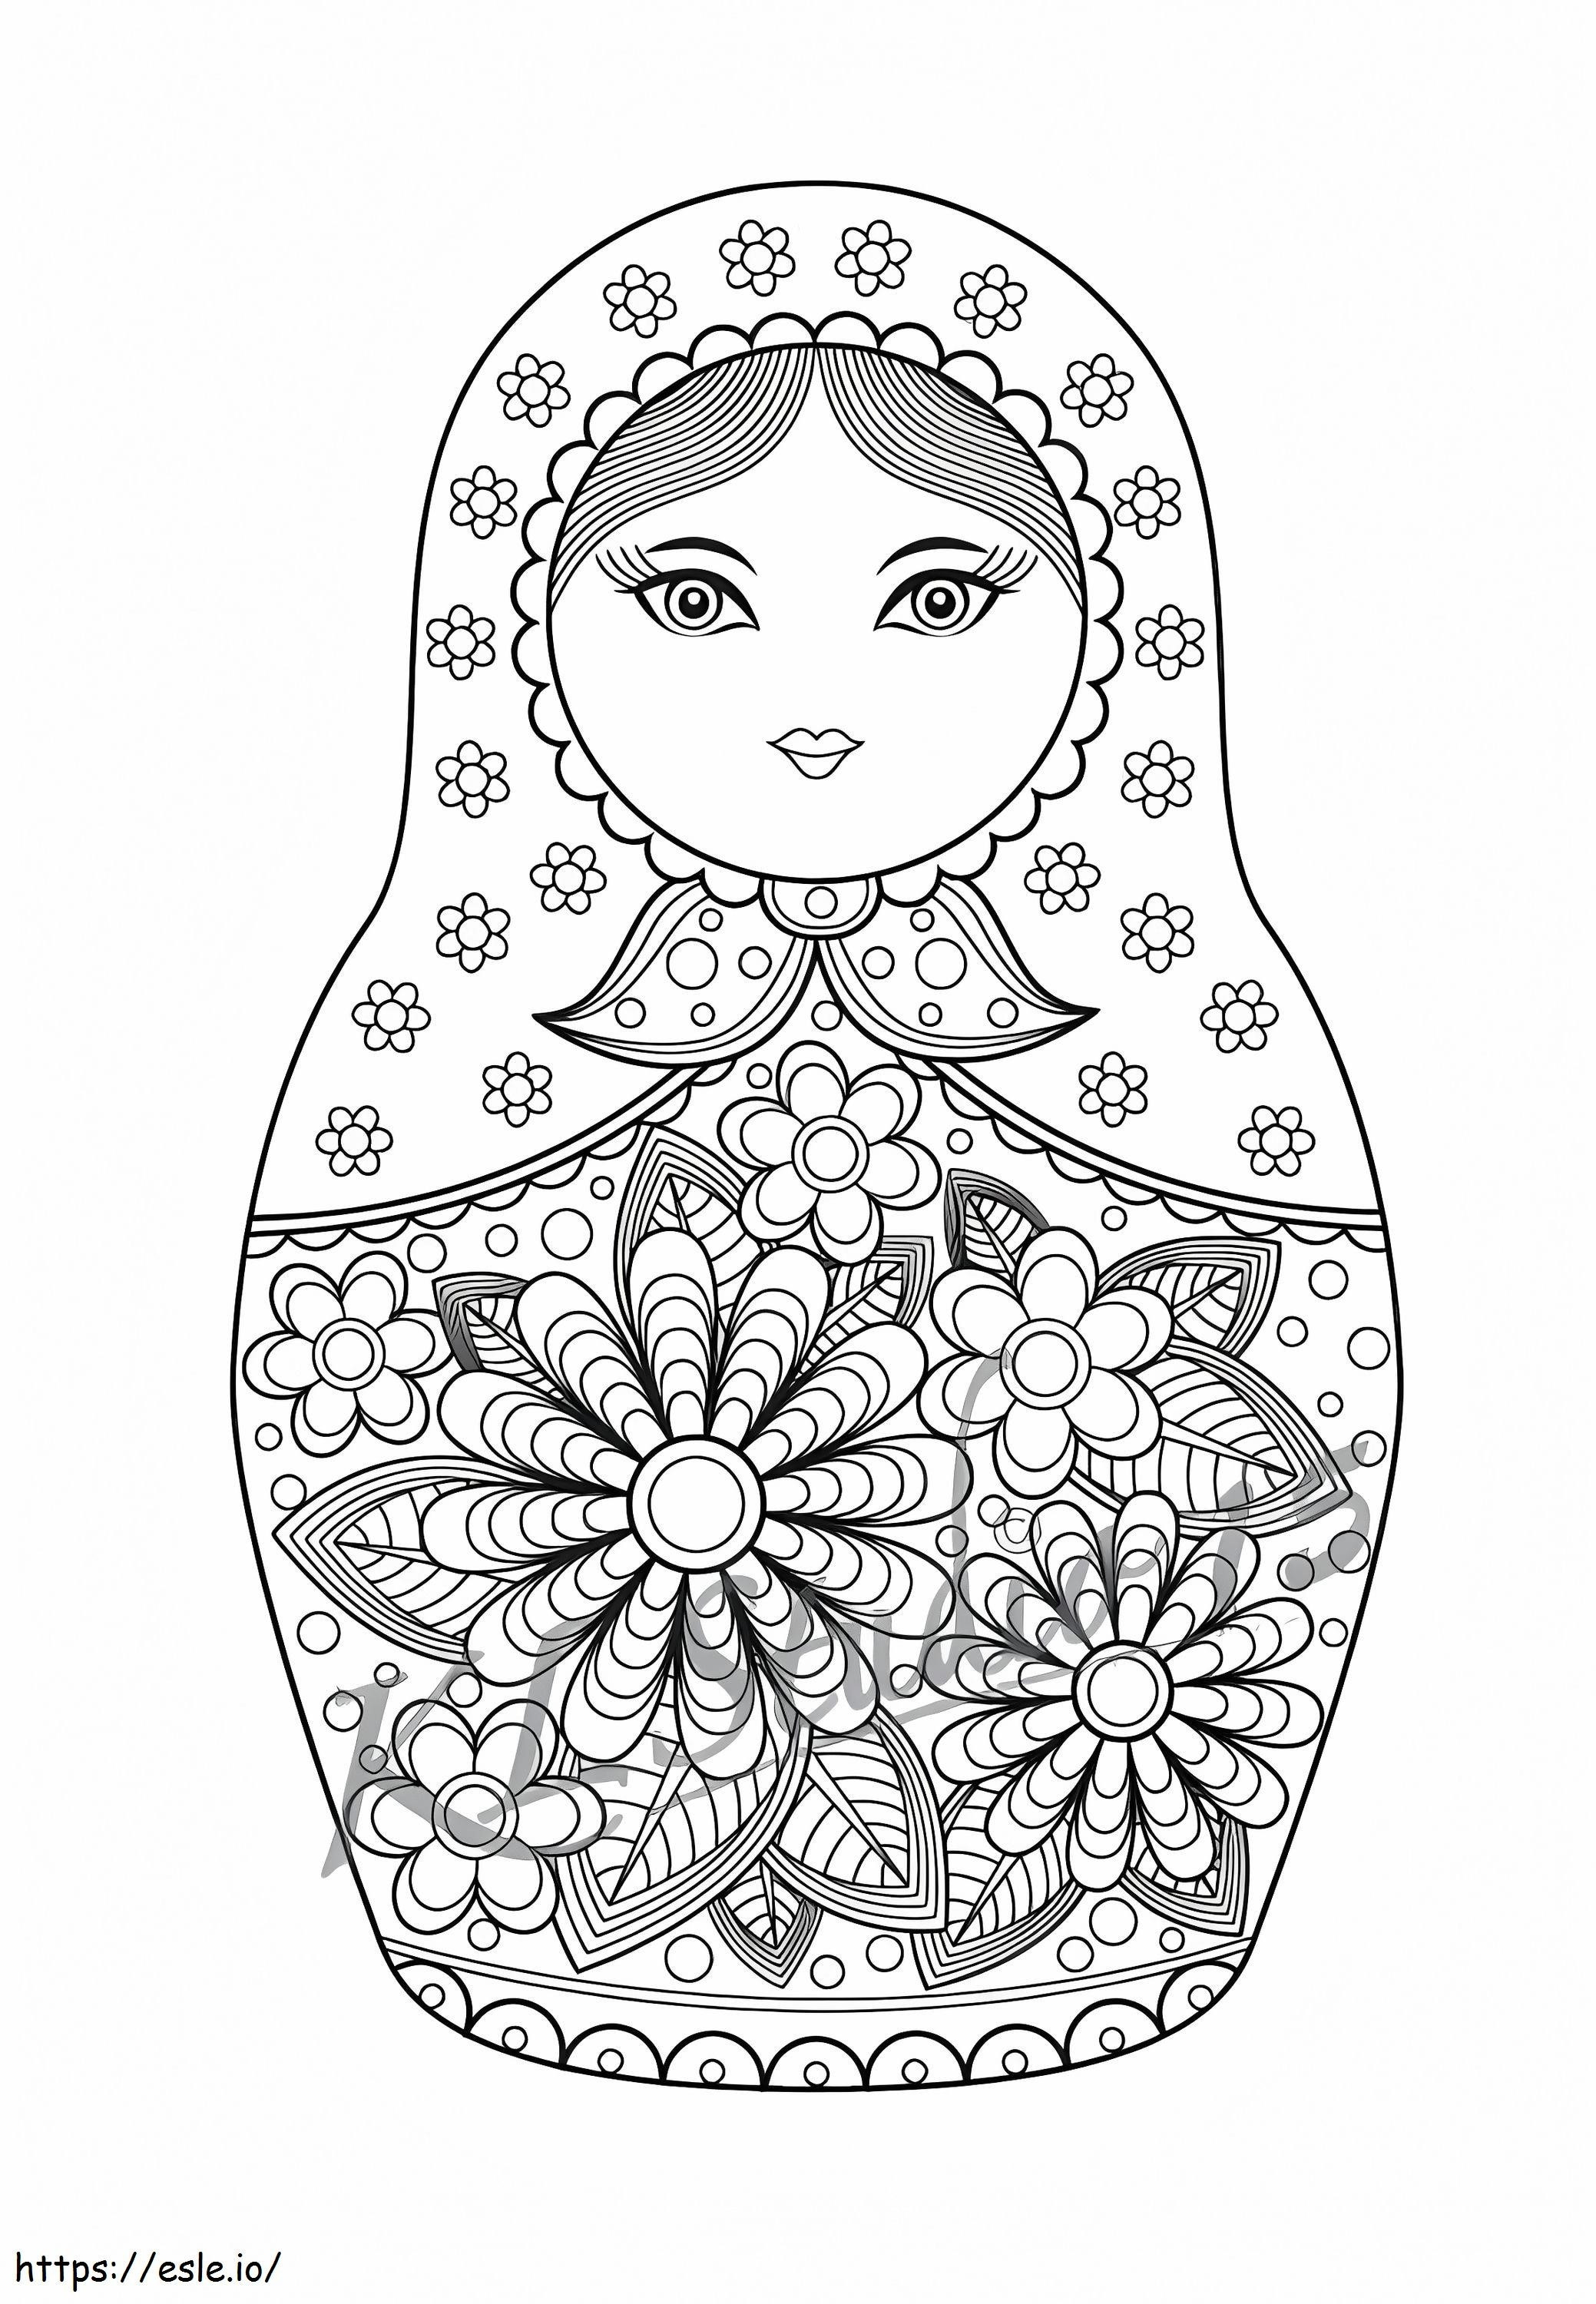 Russian Doll Matryoshka coloring page